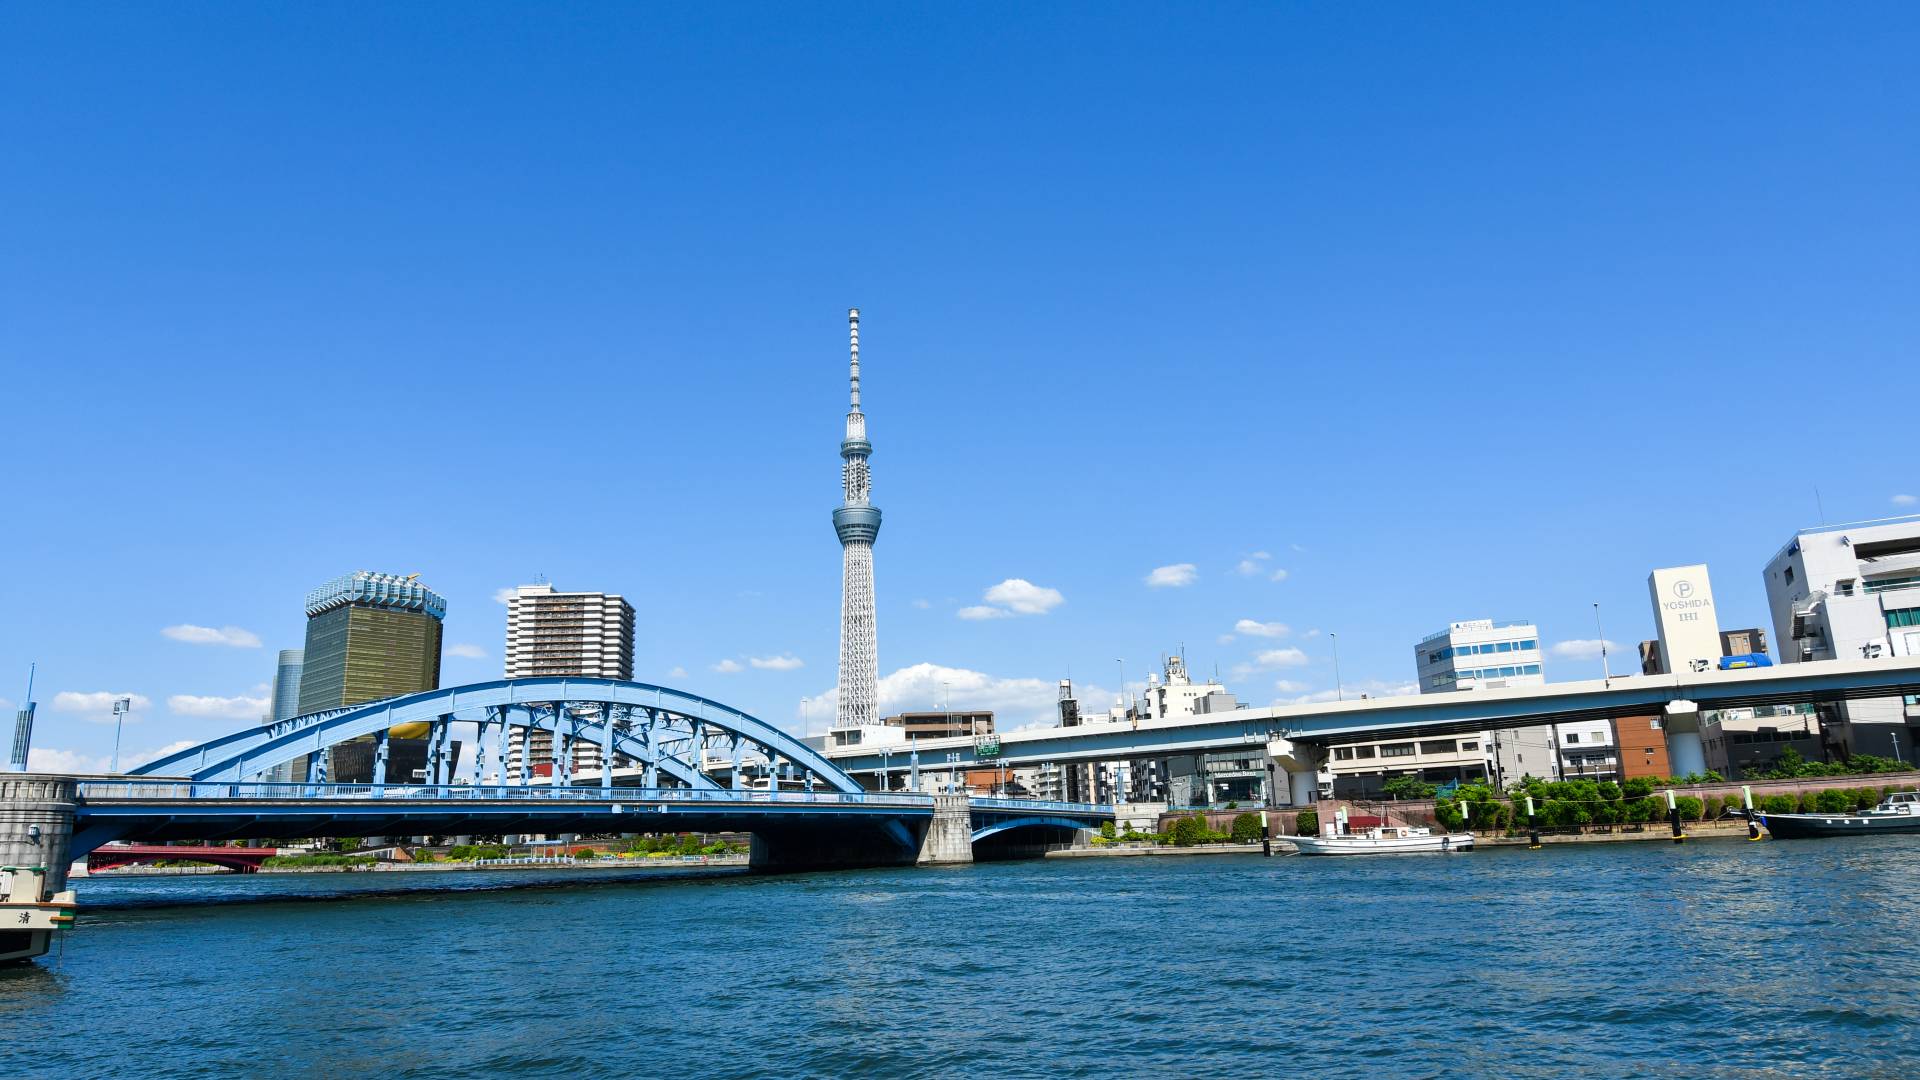 Take a walk along Sumida River